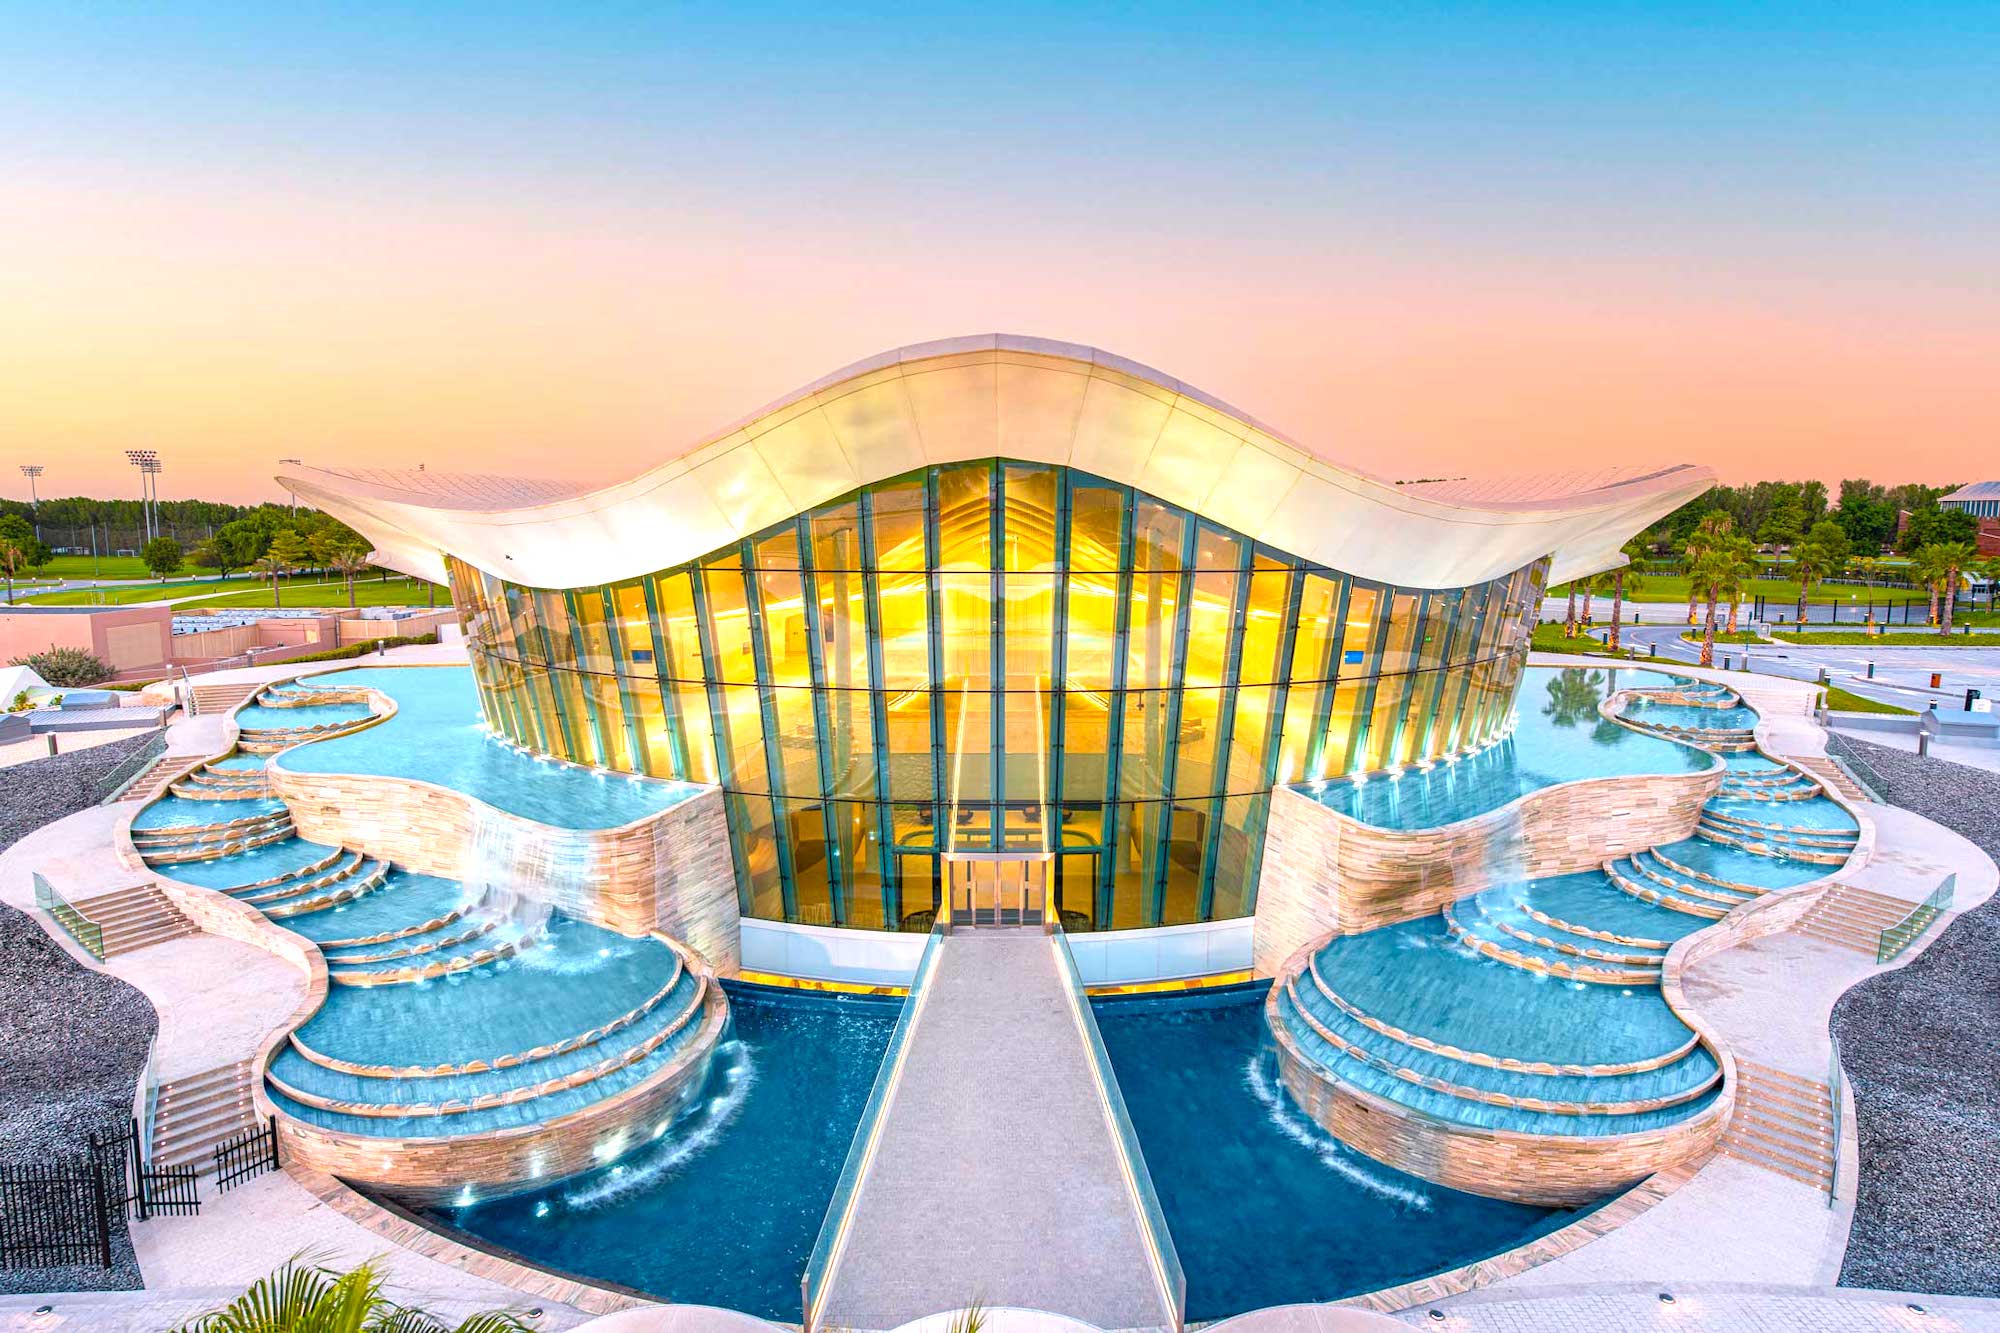 La piscina de buceo más profunda del mundo está en Dubai y tiene una ciudad sumergida a 60 metros bajo el agua lista para que la explores